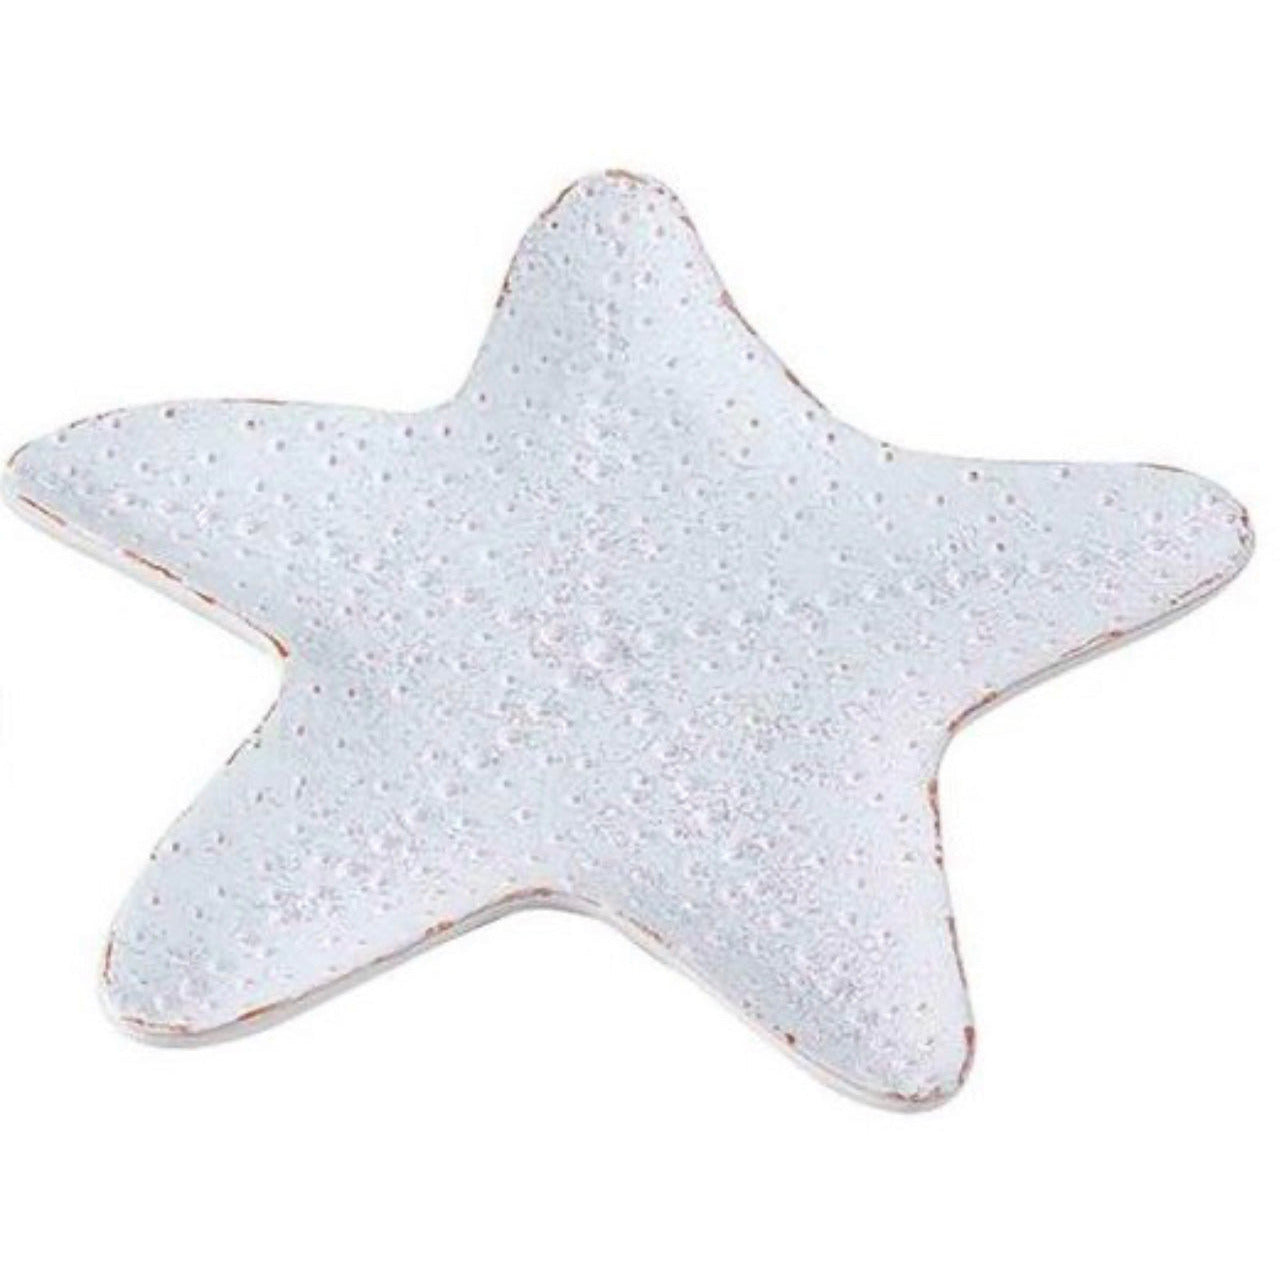 Starfish Platter